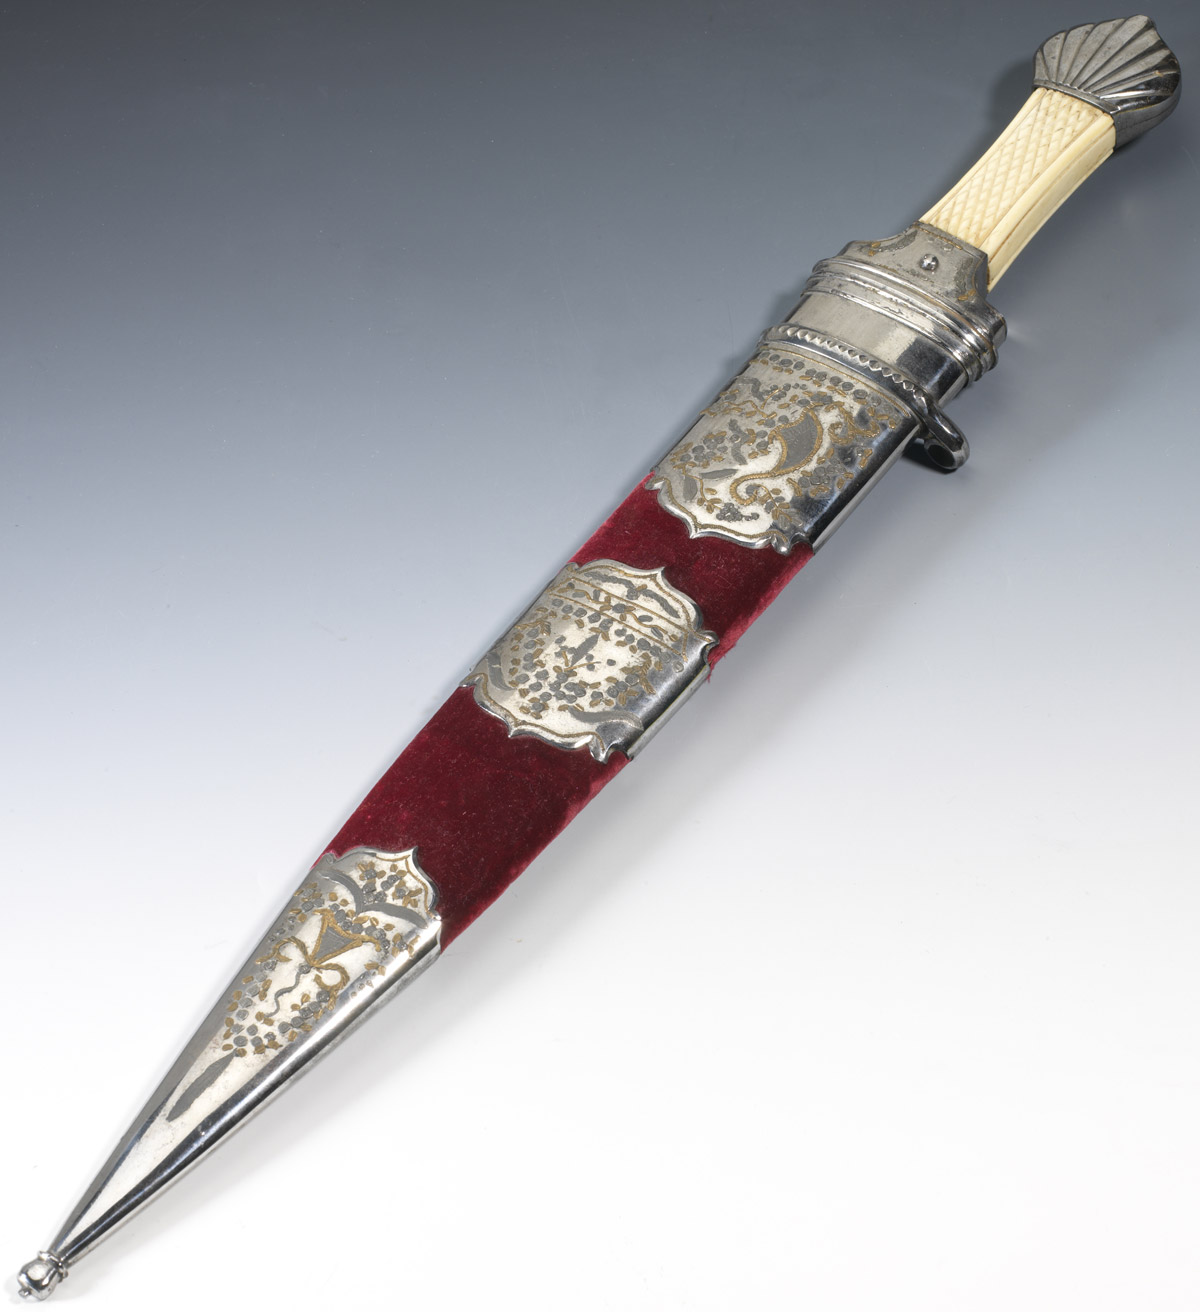 Dague de chasse - Patrimoine Charles-André COLONNA WALEWSKI, en ligne directe de Napoléon